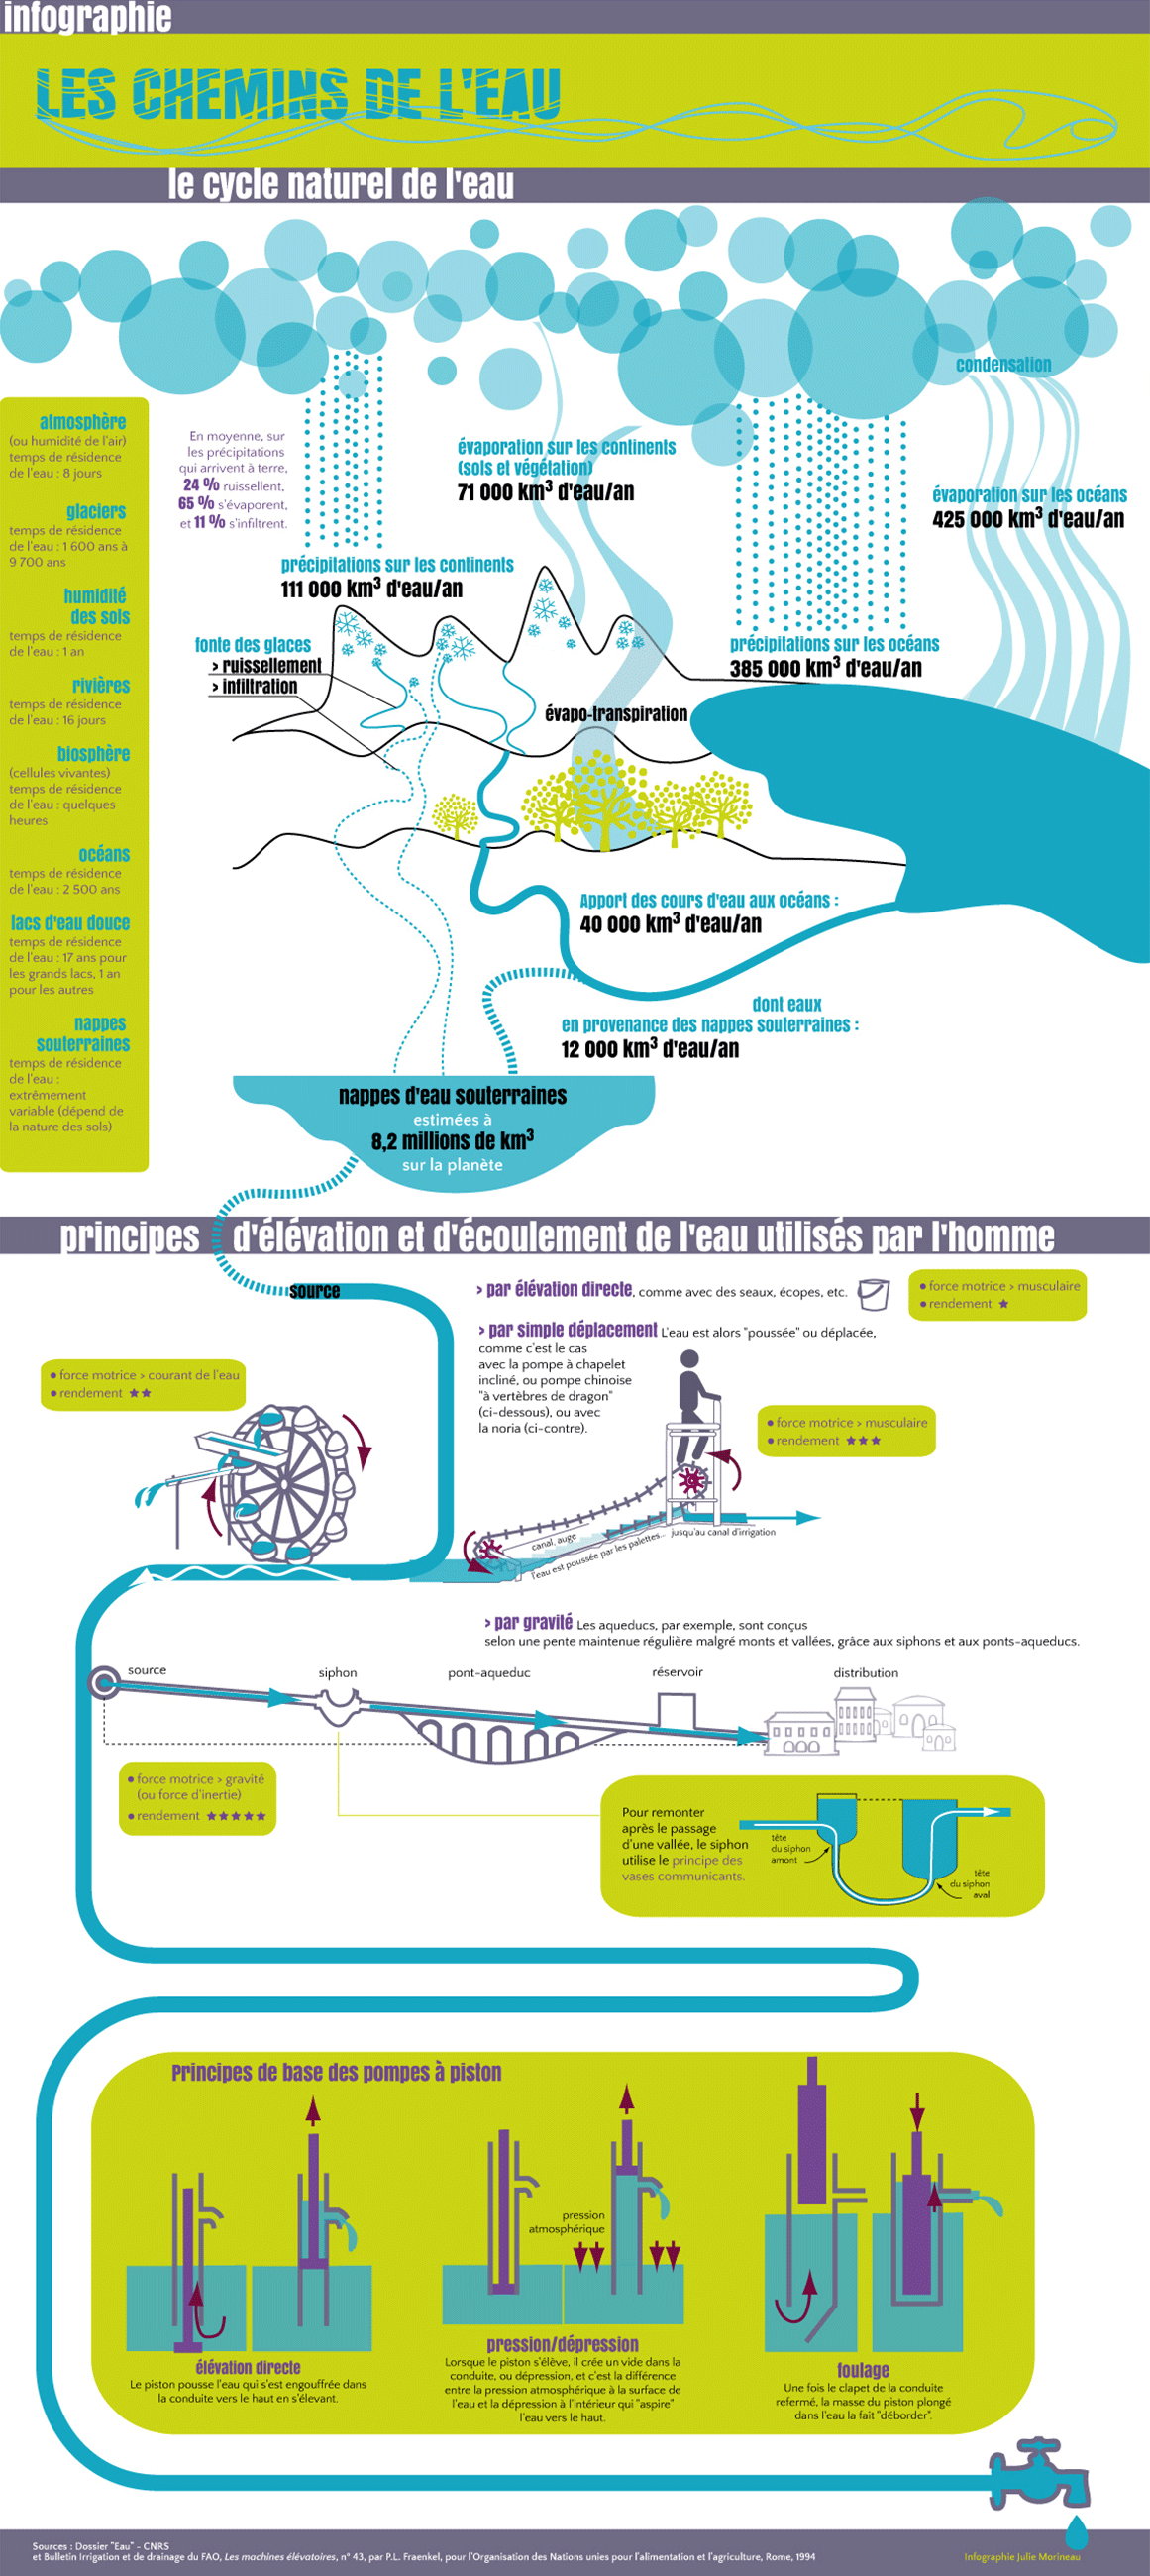 infographie du cycle naturel de l'eau